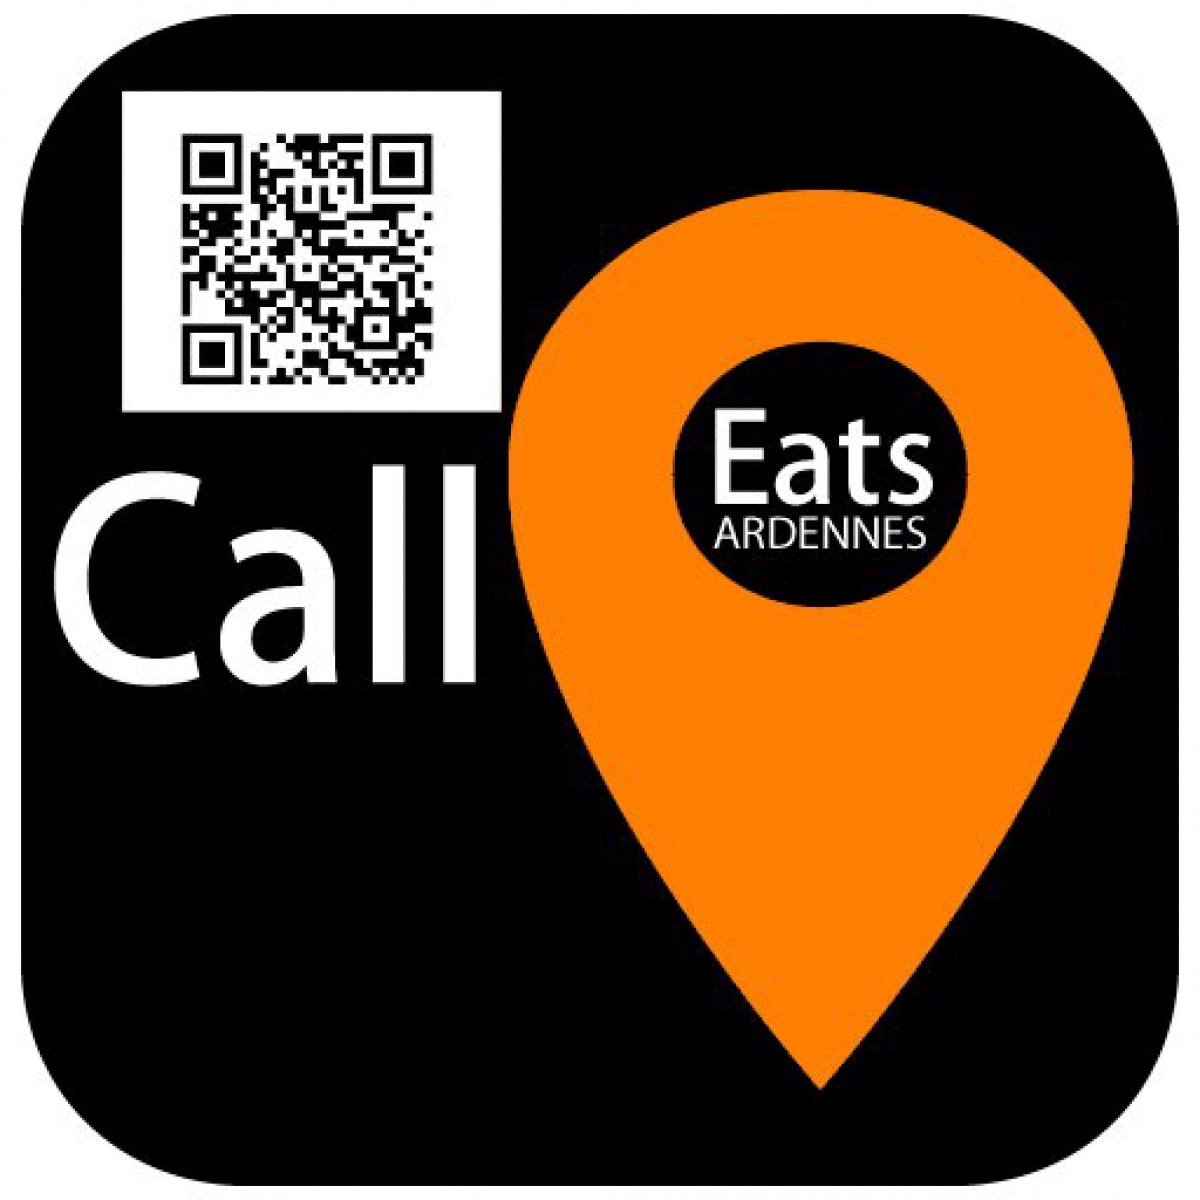 Call Eats Ardennes